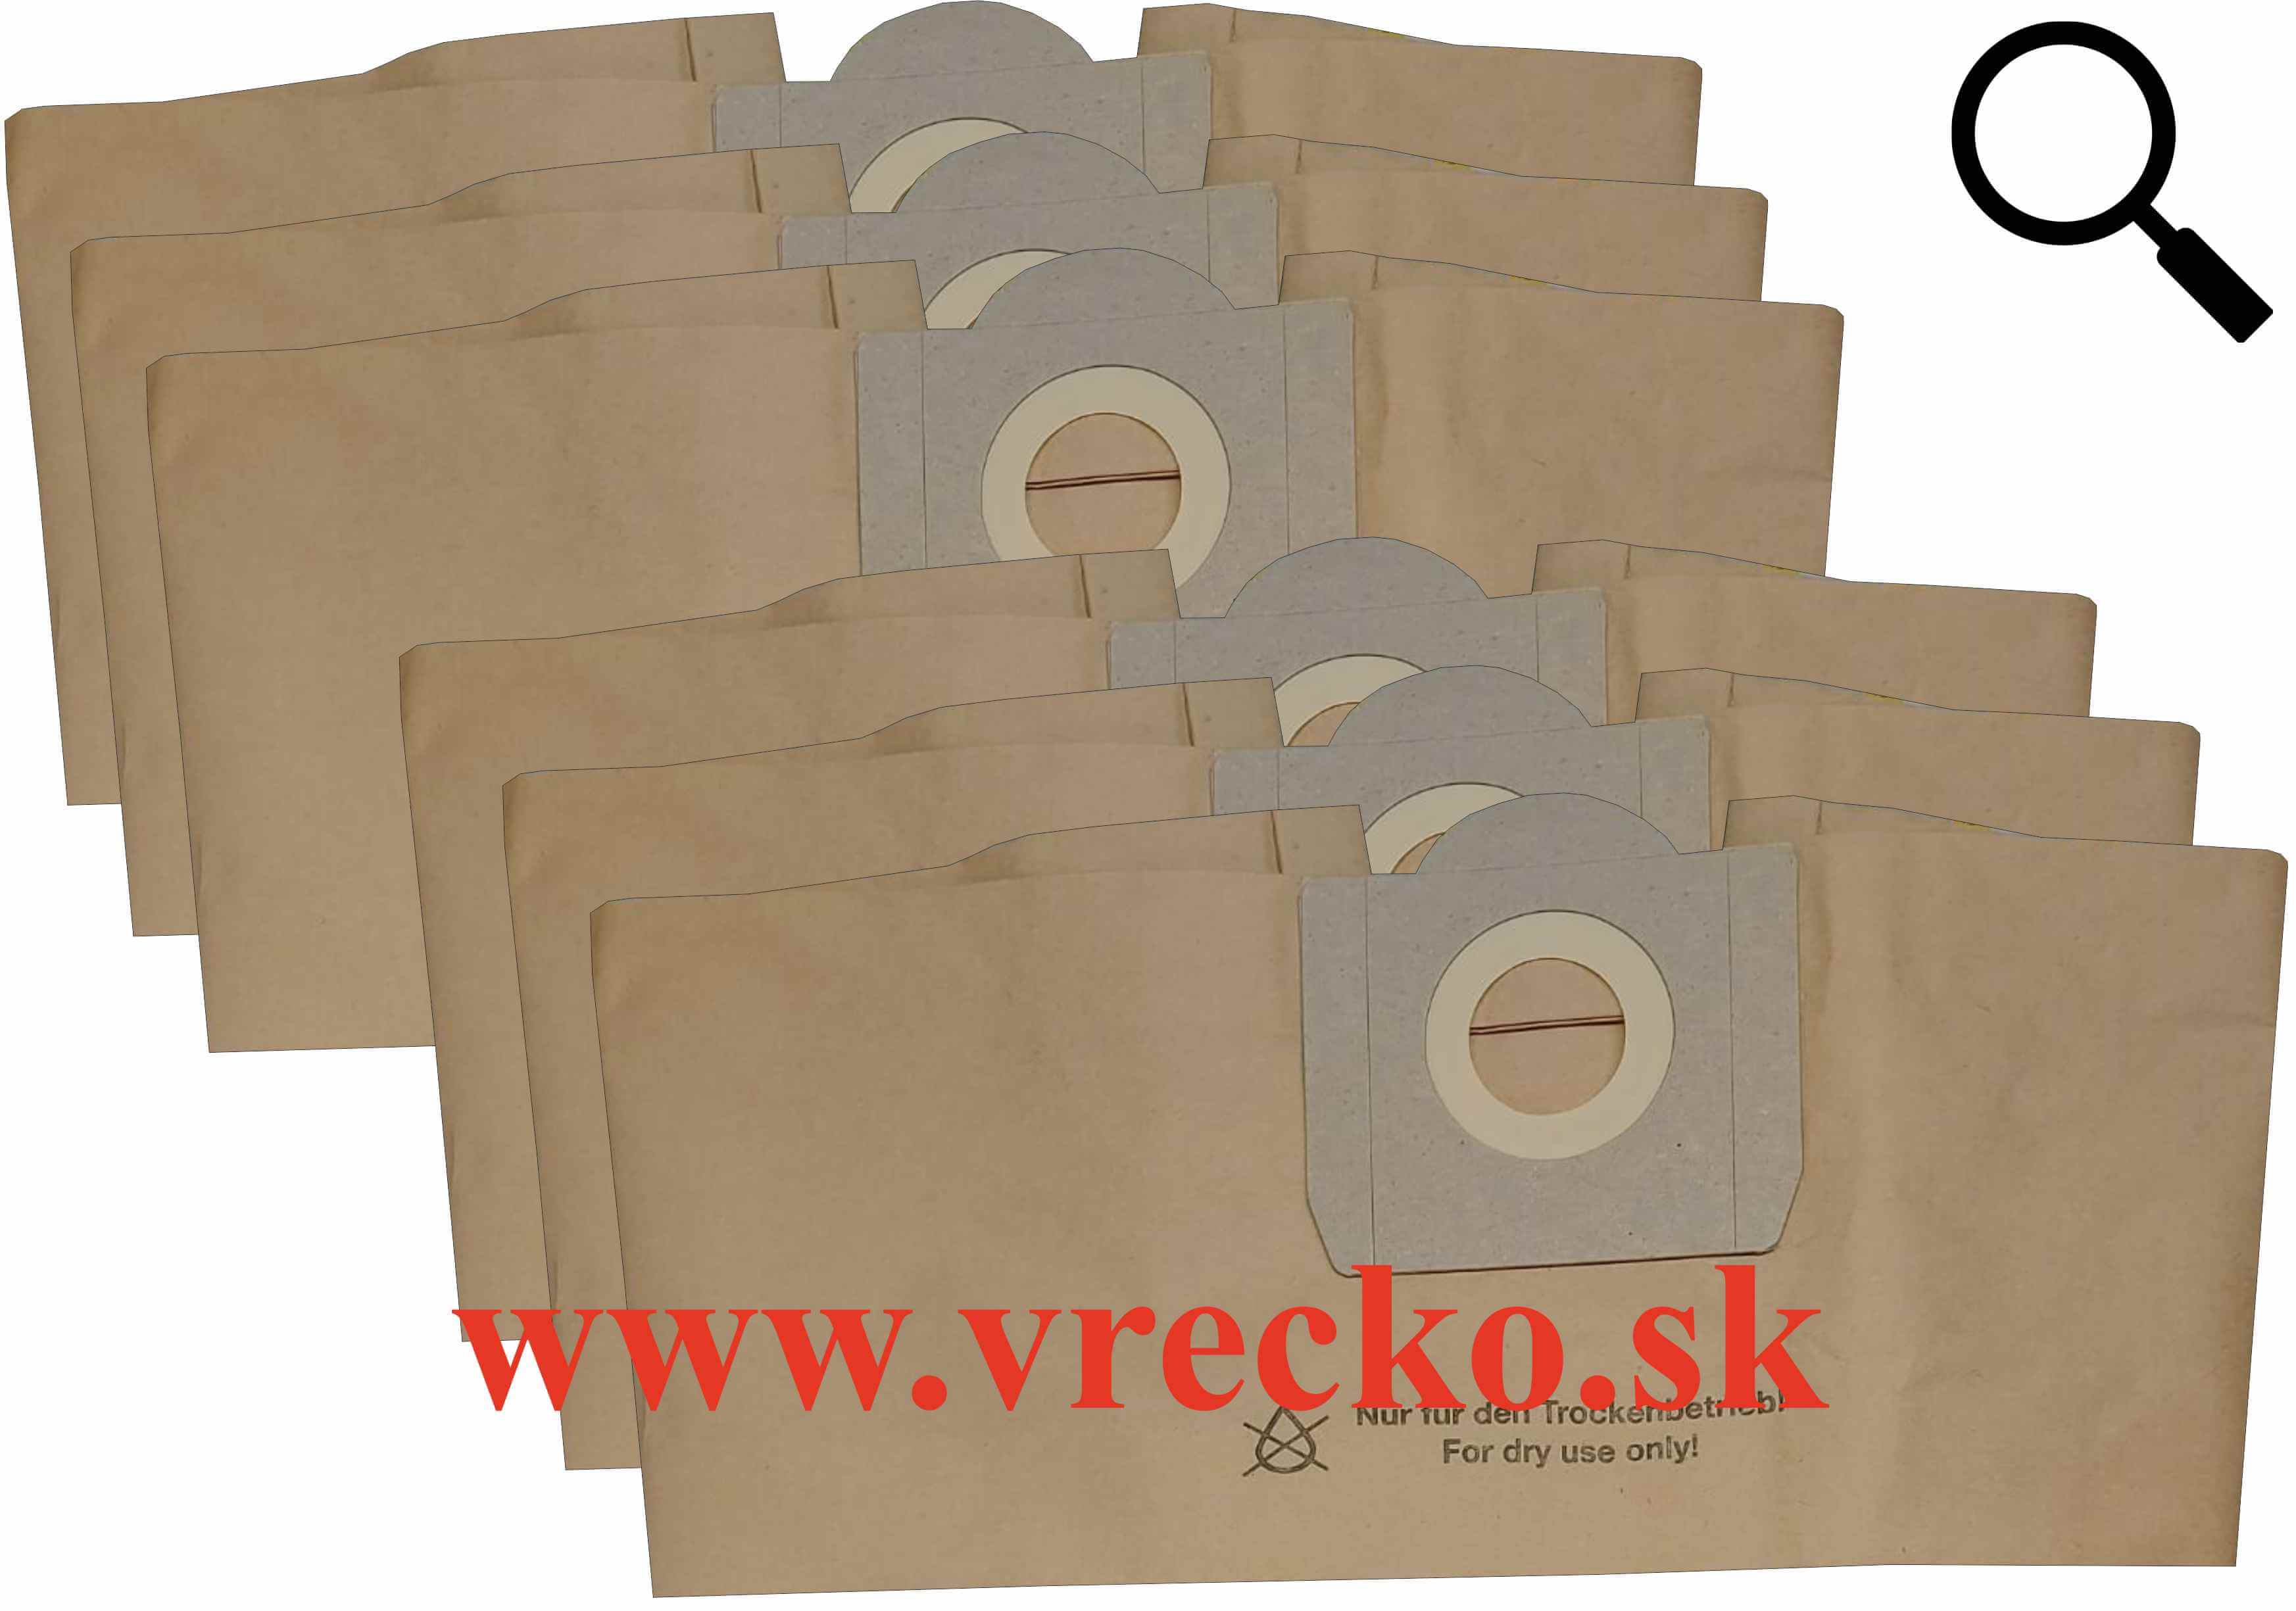 Einhell AS 1400 - zvhodnen balenie typ S - papierov vreck do vysvaa, 6ks